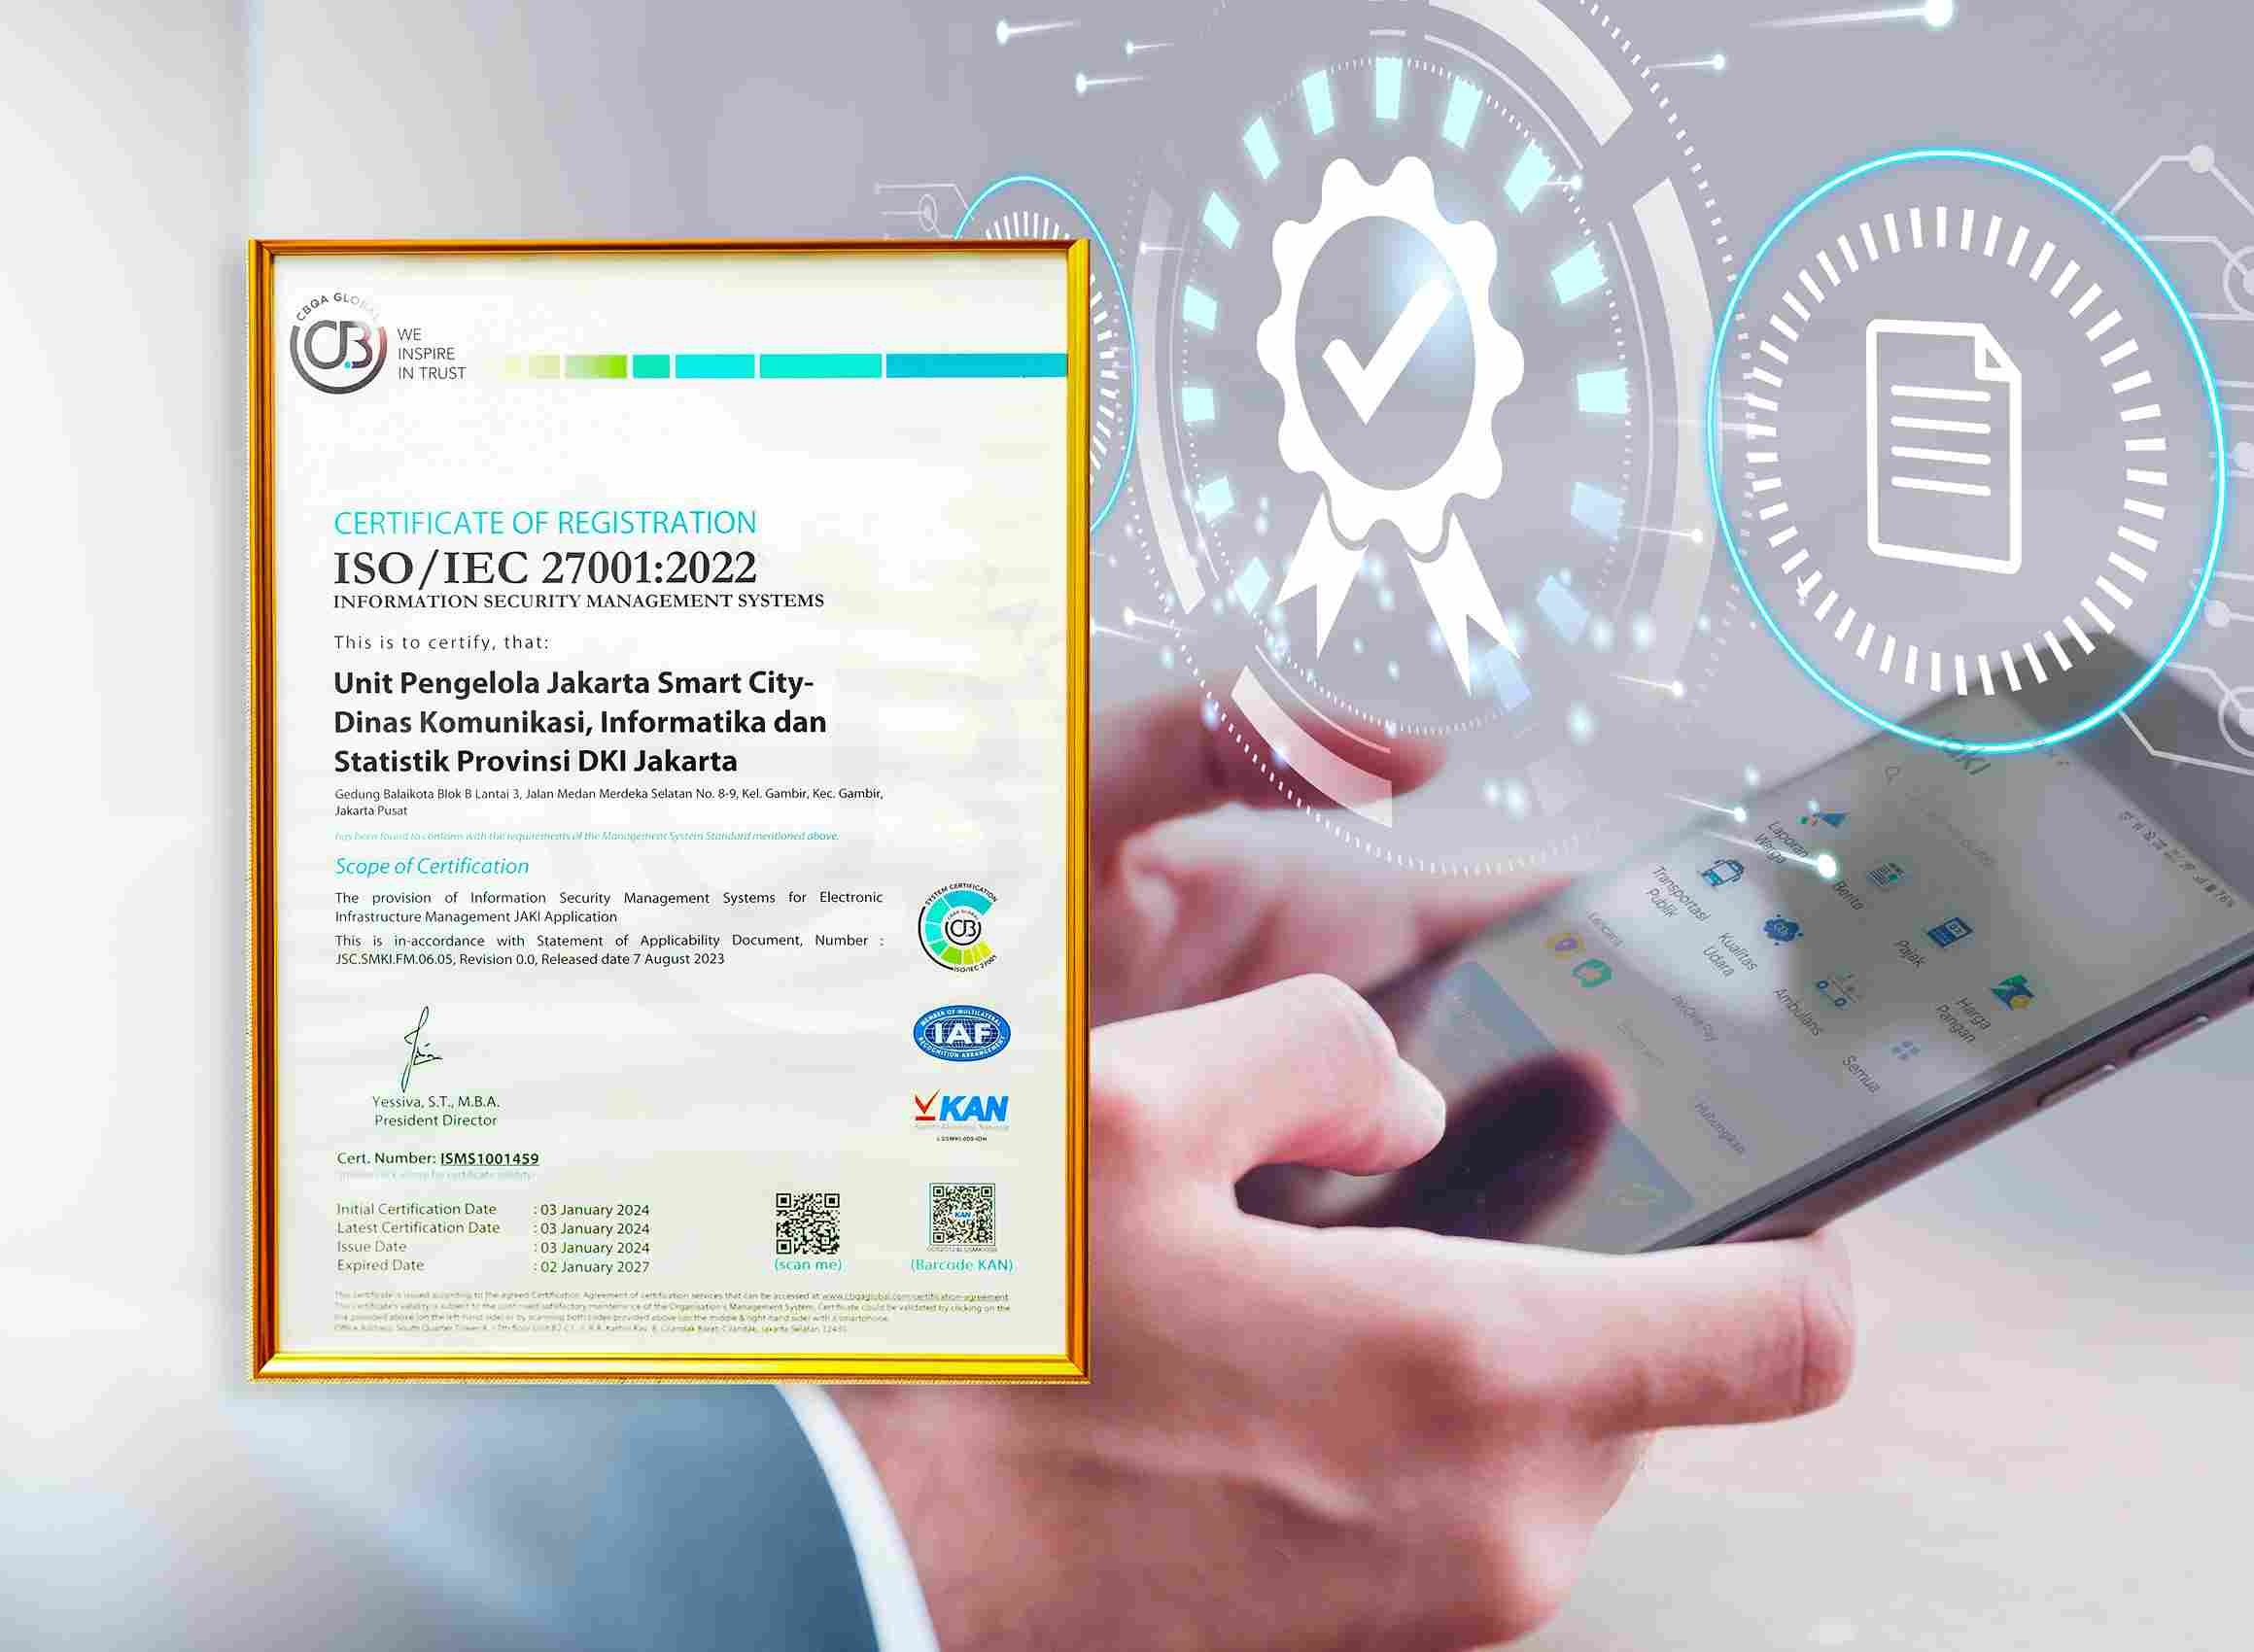 Jakarta Smart City mendapat sertifikasi SNI ISO/IEC 27001:2022 terkait pengelolaan keamanan informasi. Baca selengkapnya di sini.